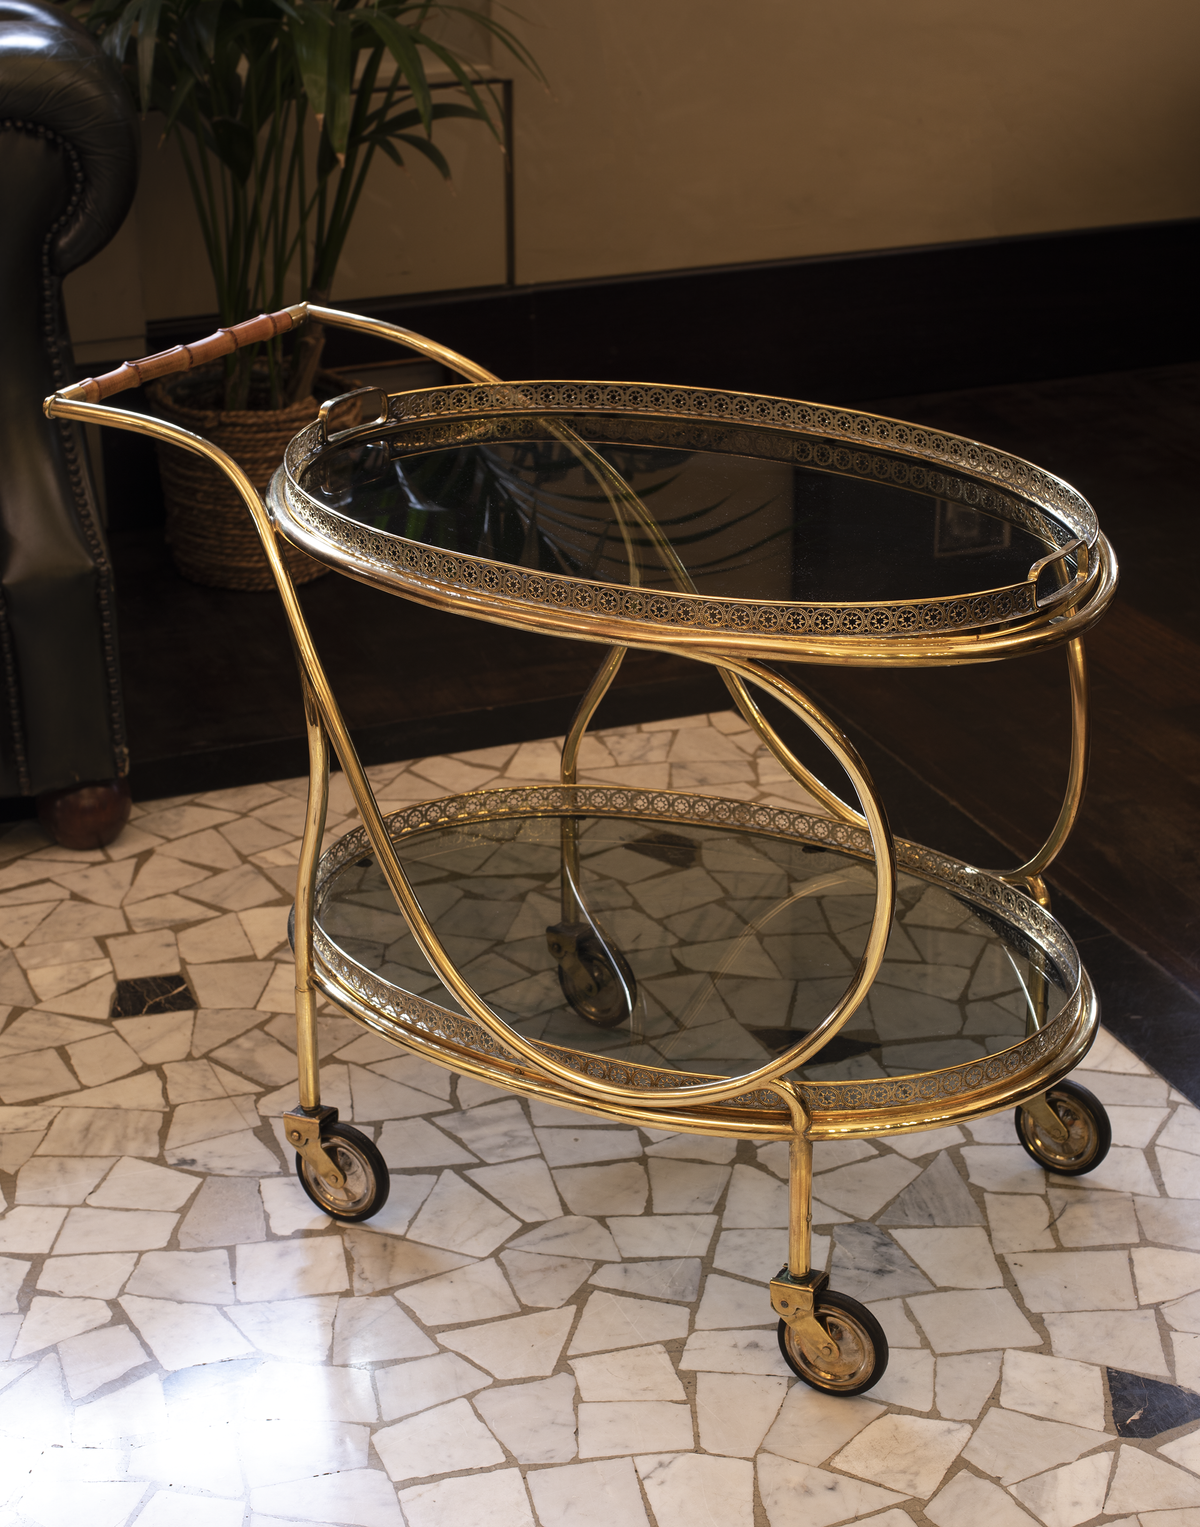 Carrello ovale in ottone dorato modello &quot;Galleria&quot;  - 1950 - Brass Circular “Gallery” bar cart